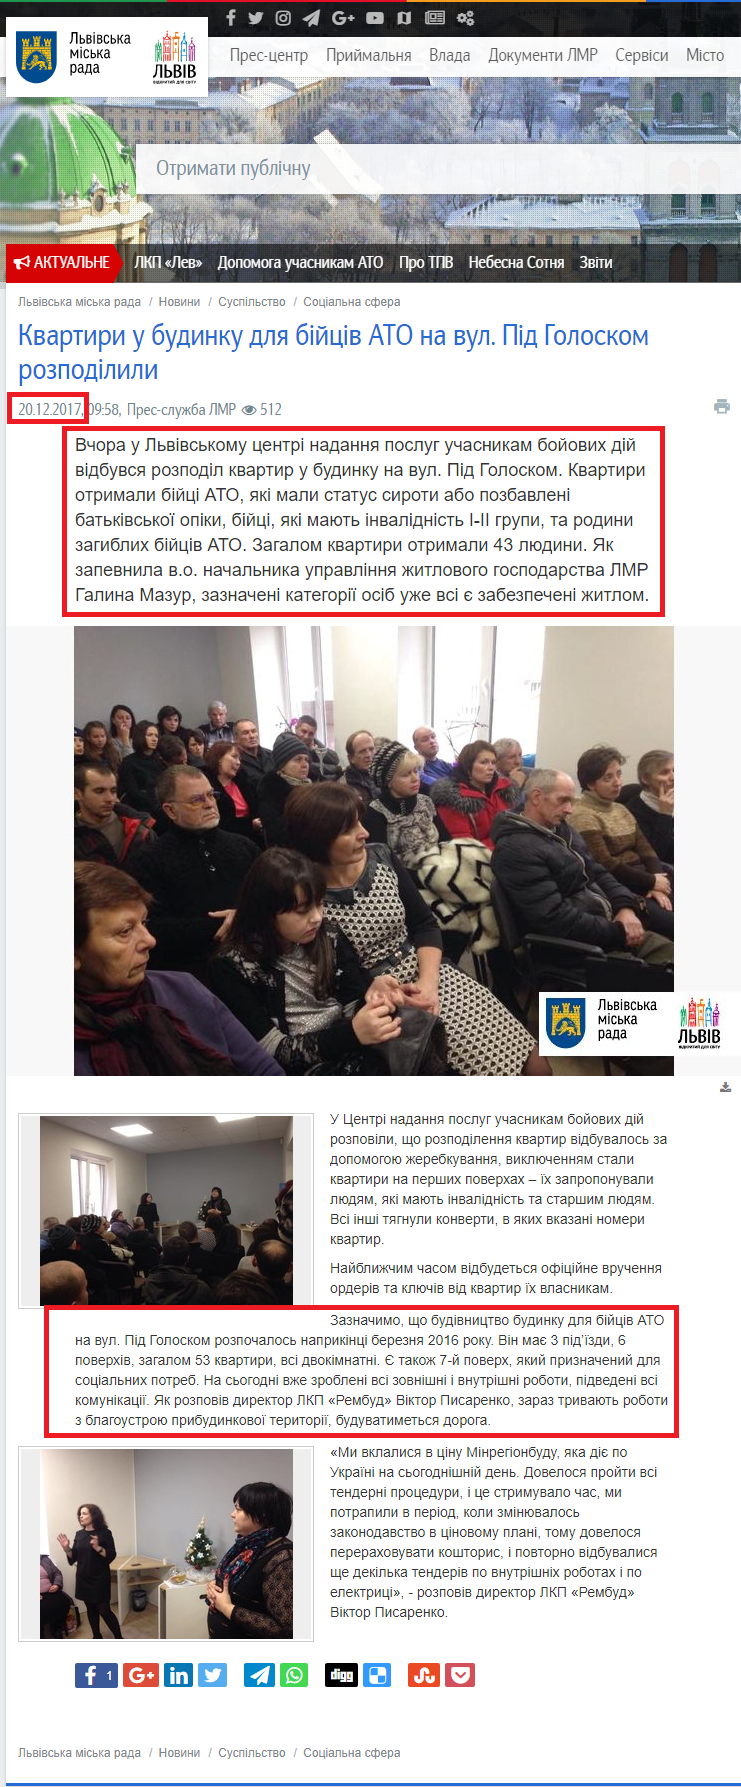 http://city-adm.lviv.ua/news/society/social-sphere/244727-kvartiri-u-budinku-dlya-bijtsiv-ato-na-vul-pid-goloskom-rozpodilili